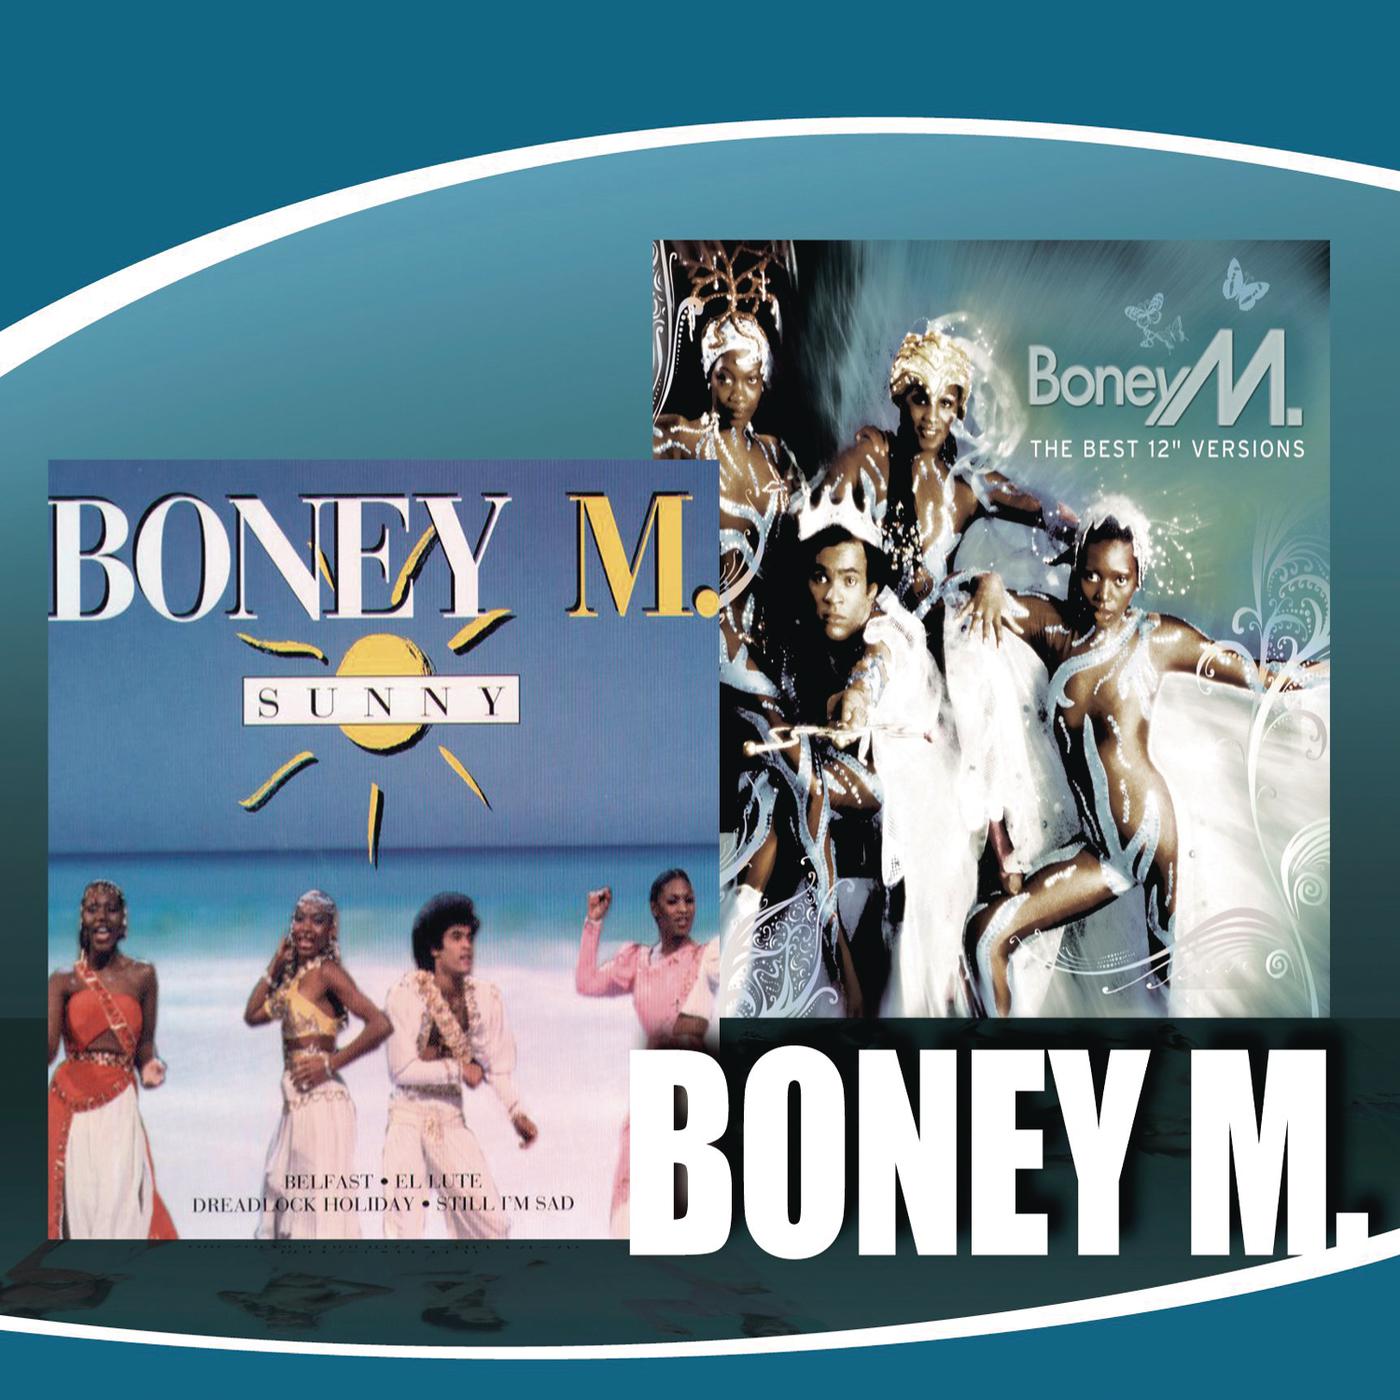 Boney m kalimba. Boney m Sunny обложка. Boney m обложки альбомов. Boney m 2014. Первый состав Boney m.